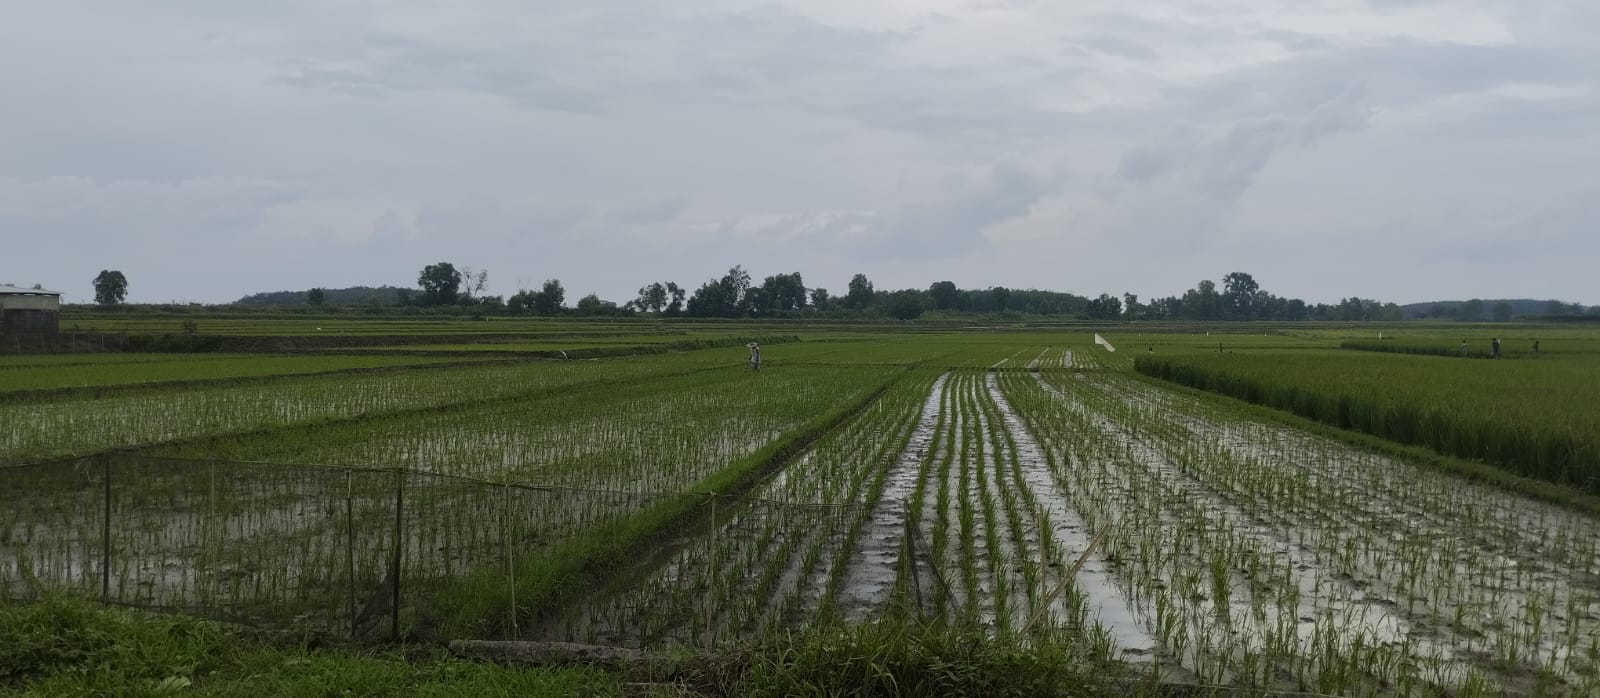 Dampak El-Nino, Harga Beras di Lampung Utara Meroket